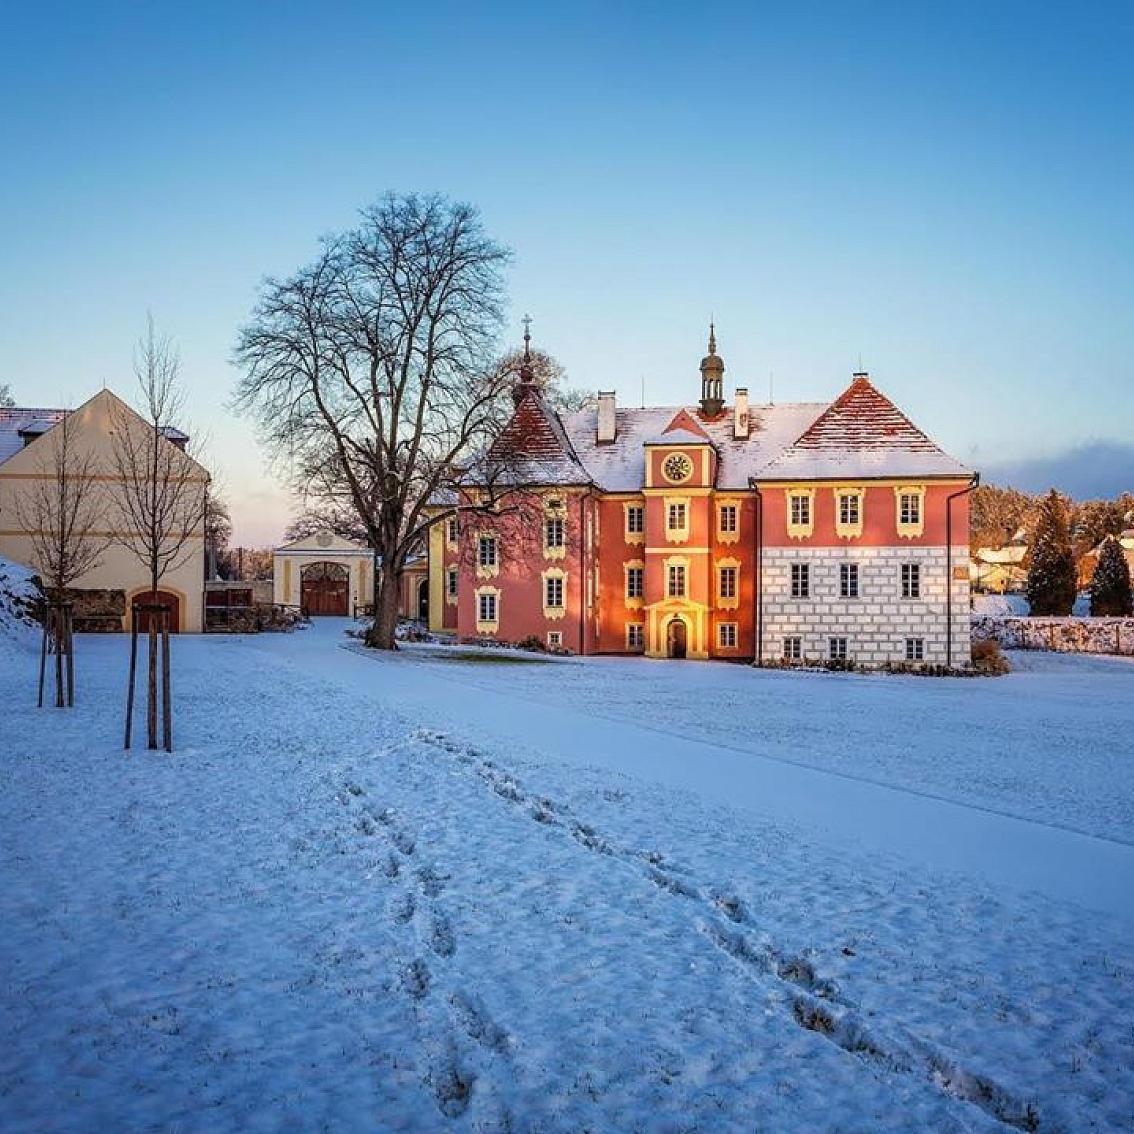 Jižní Čechy on Instagram: “Sněhem políbený zámek Mitrowicz 😘❄️ ~ Chateaux Mitrowicz kissed by snow 😘❄️ ~ 📸 díky @zamek_mitrowicz ❤️ ~ #cbhl #mitrowicz #zamekmitrowicz…”